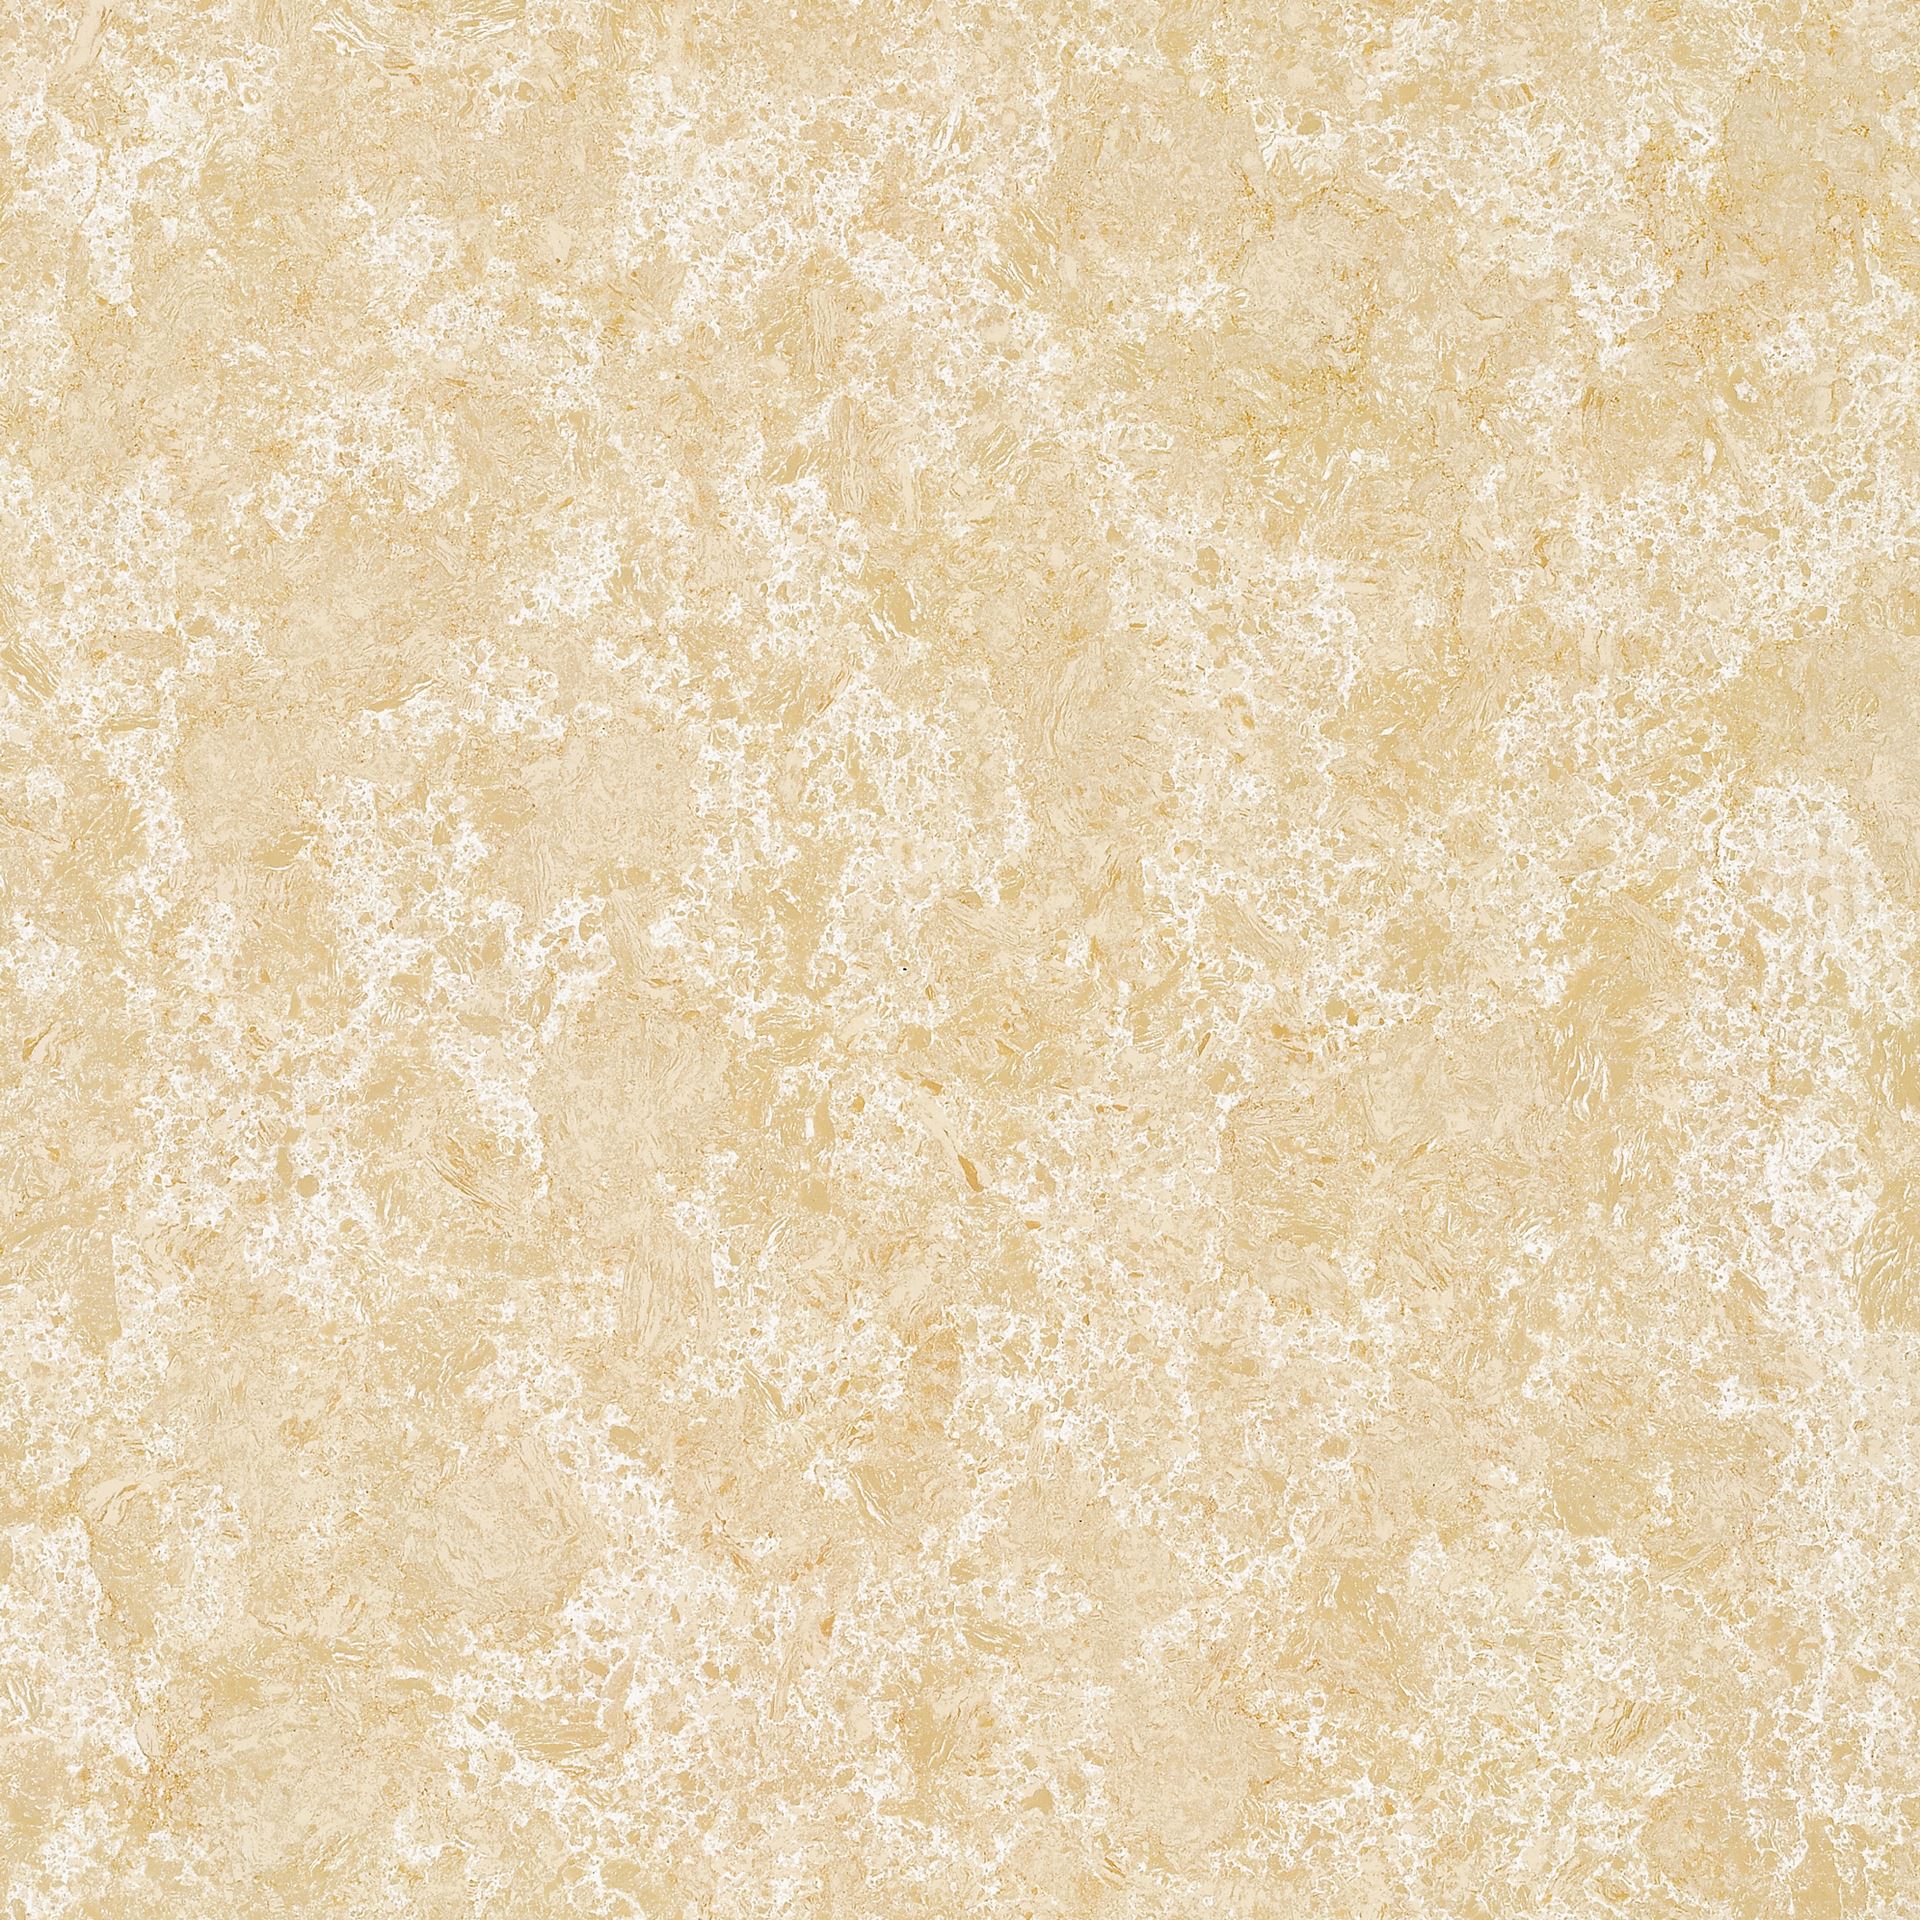 SF-L60116纯色砖-米黄，现代仿古砖，萨米特瓷砖官网 - 萨米特陶瓷--新明珠(广东)新材料有限公司